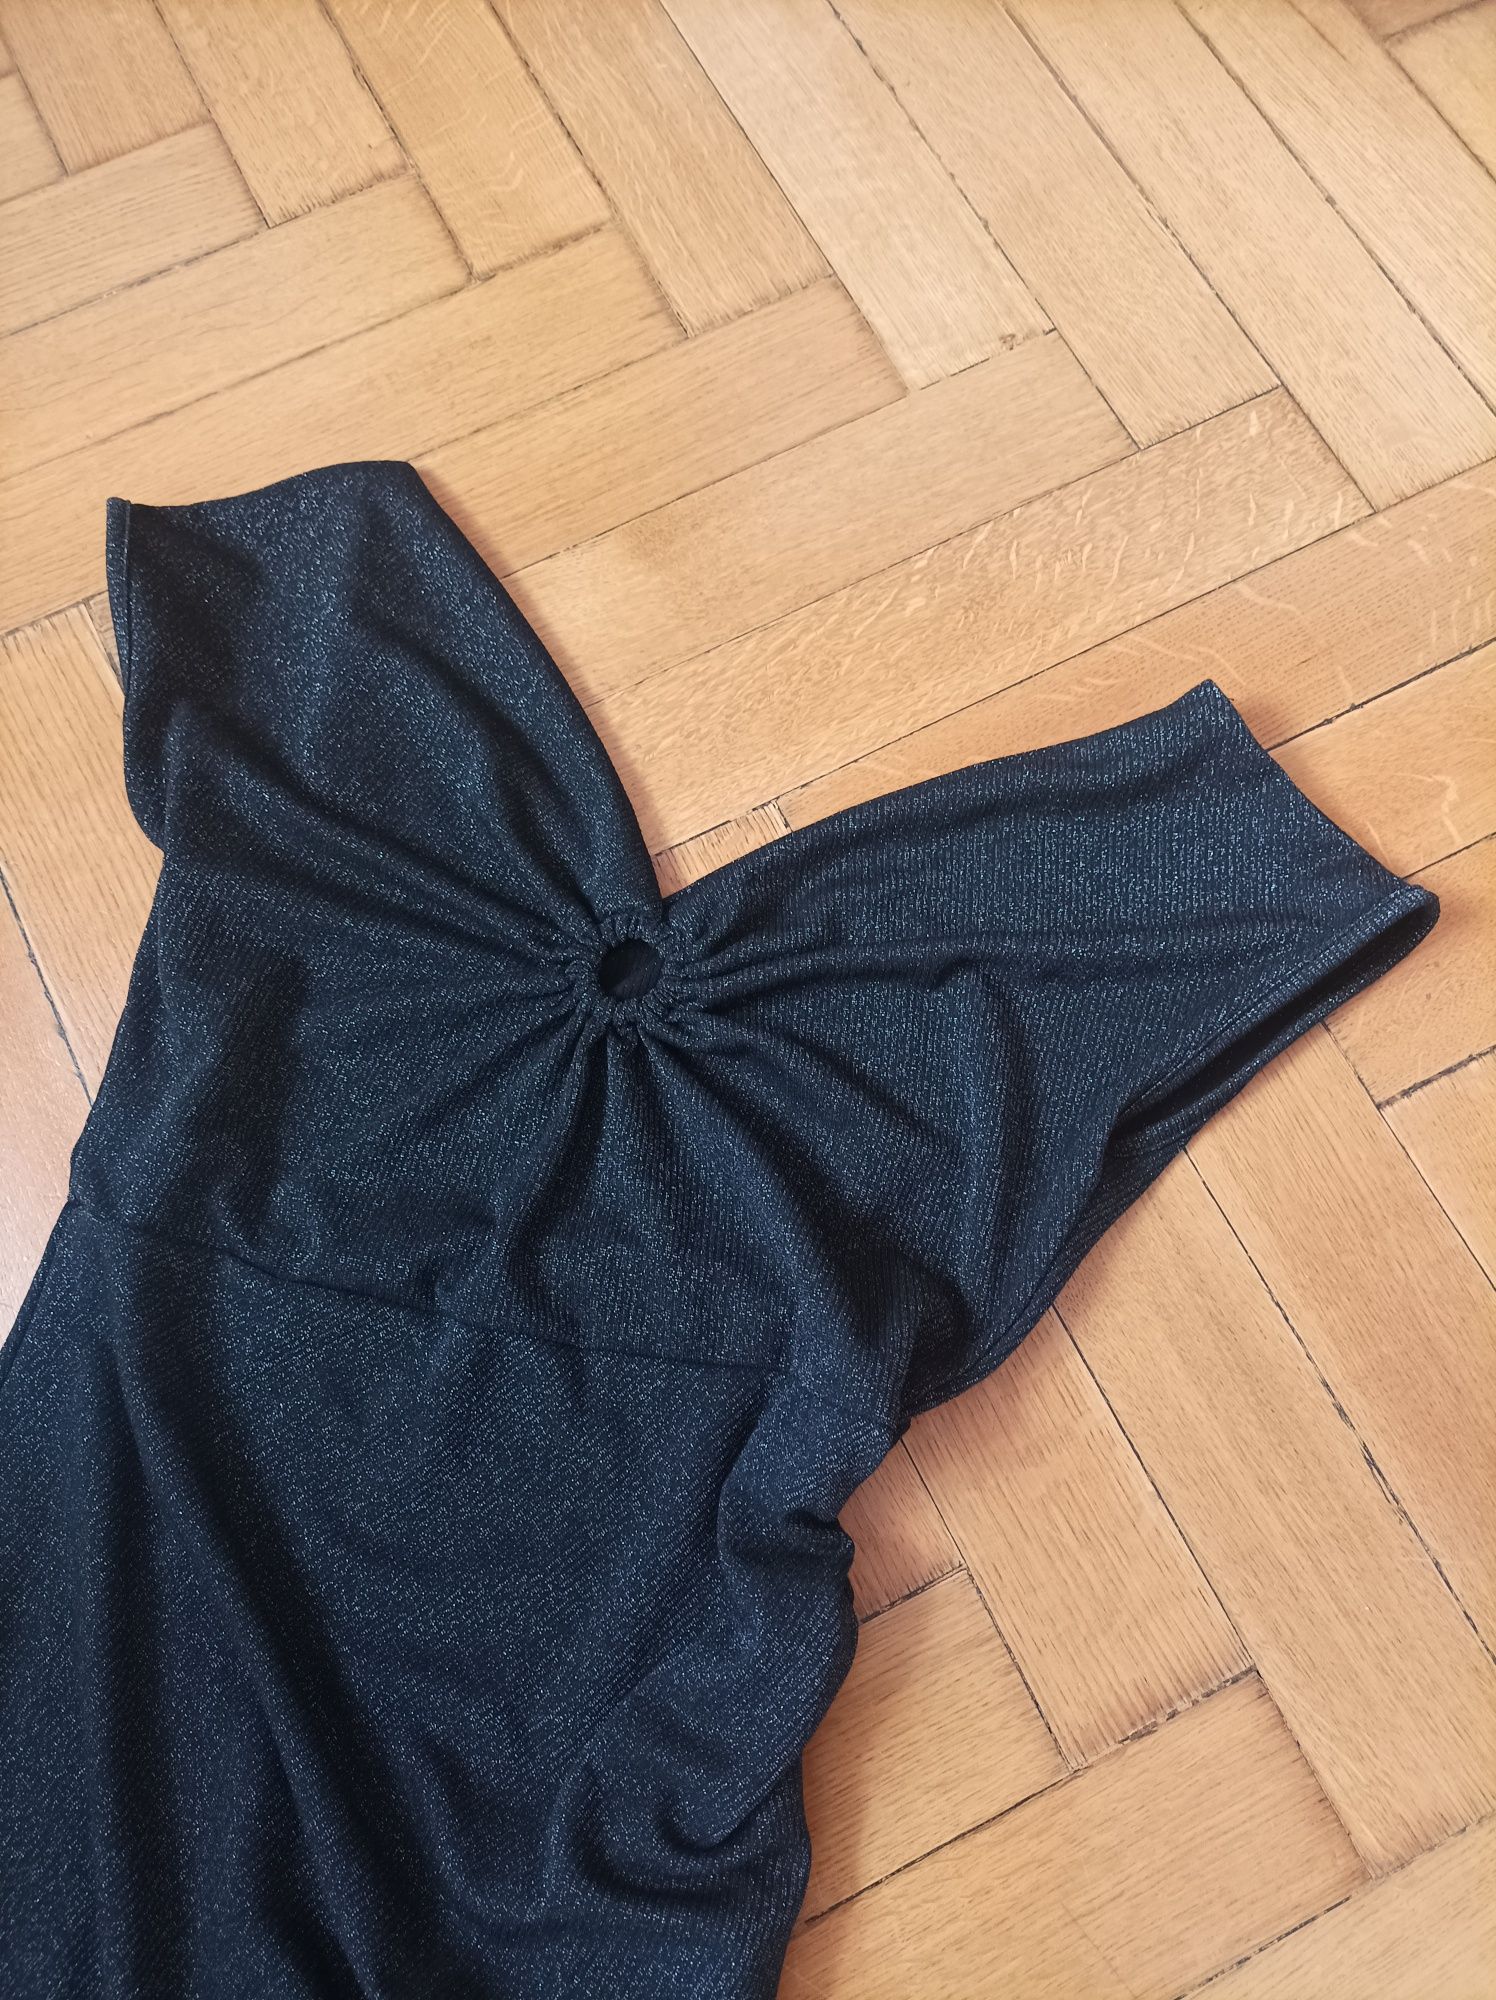 Czarna asymetryczna sukienka midi maxi połyskująca Dazy dekolf